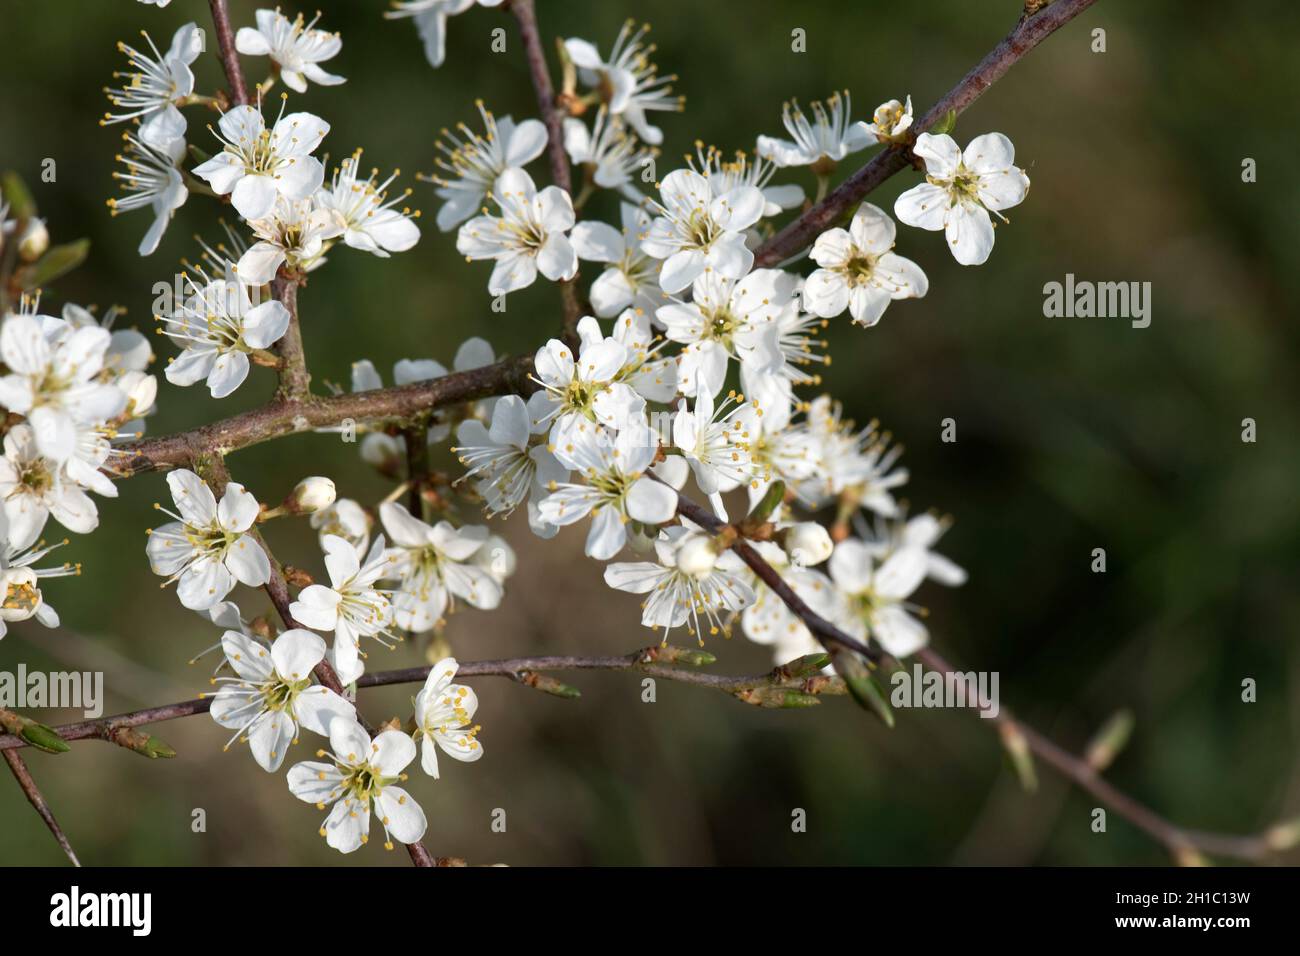 Schlehdorn oder Schlehe (Prunus spinosa) weiße Rosaceae blüht auf blattlosen Ästen im frühen Frühjahr, in der Stadt, im April Stockfoto